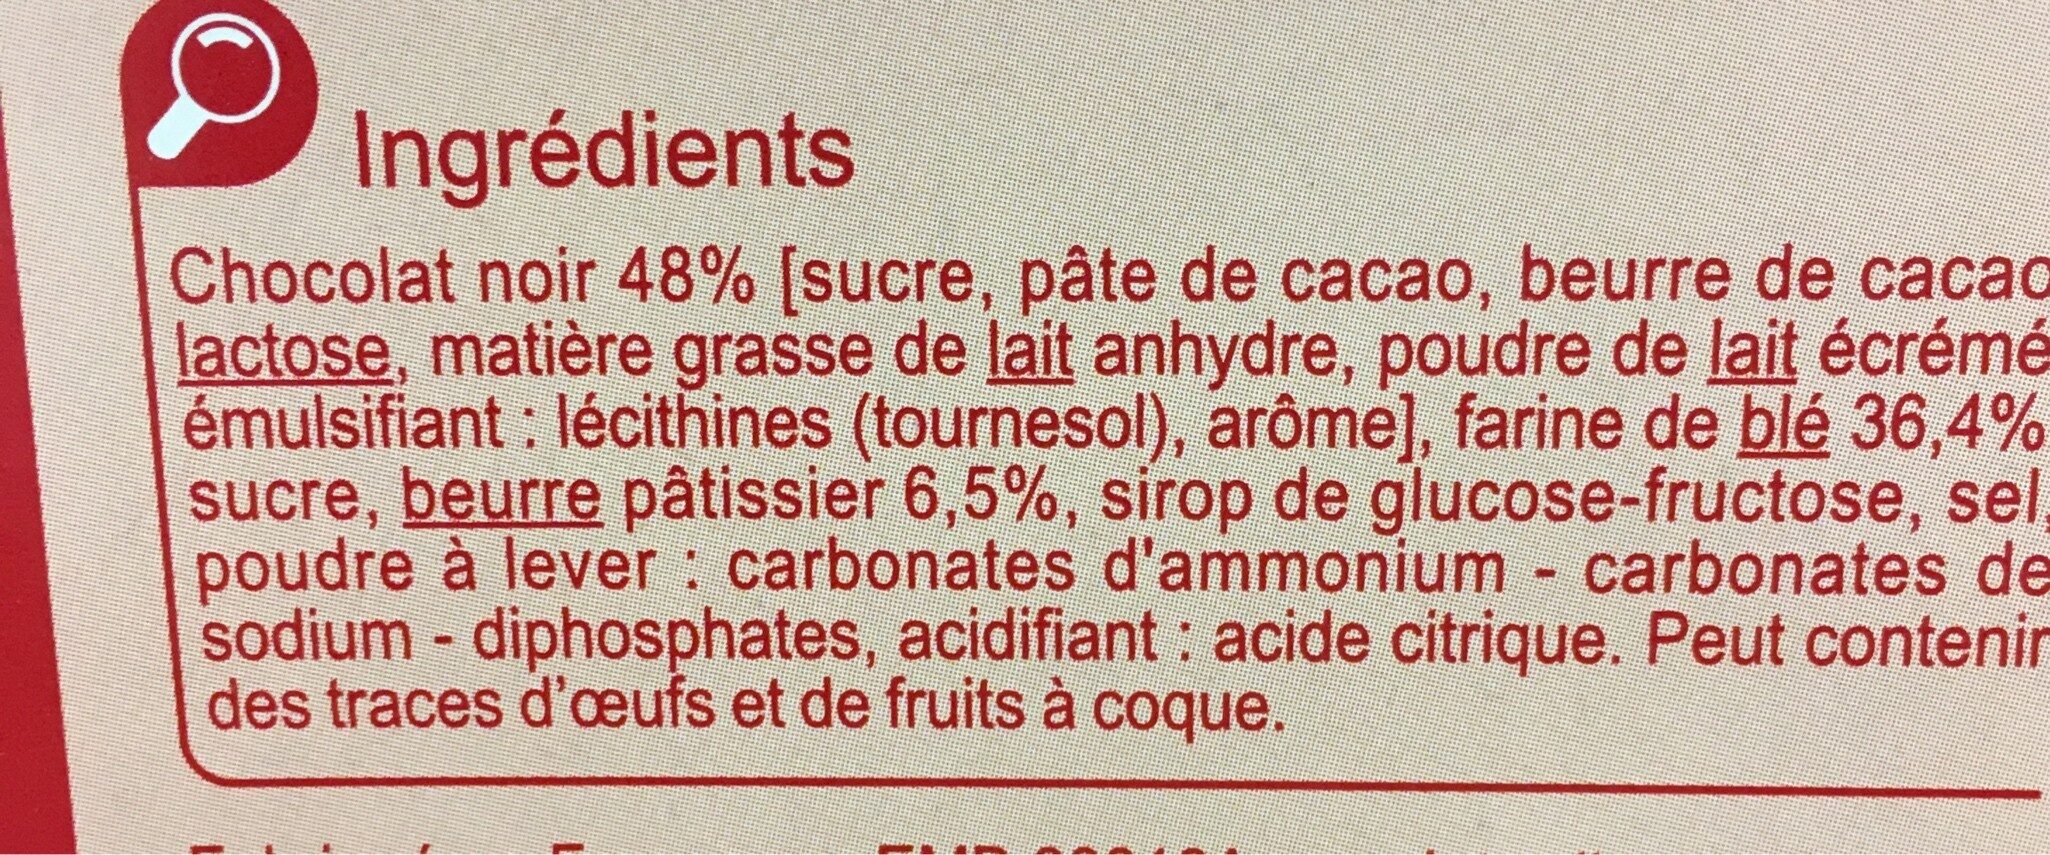 Les Tablettes CHOCOLAT NOIR - Ingredients - fr